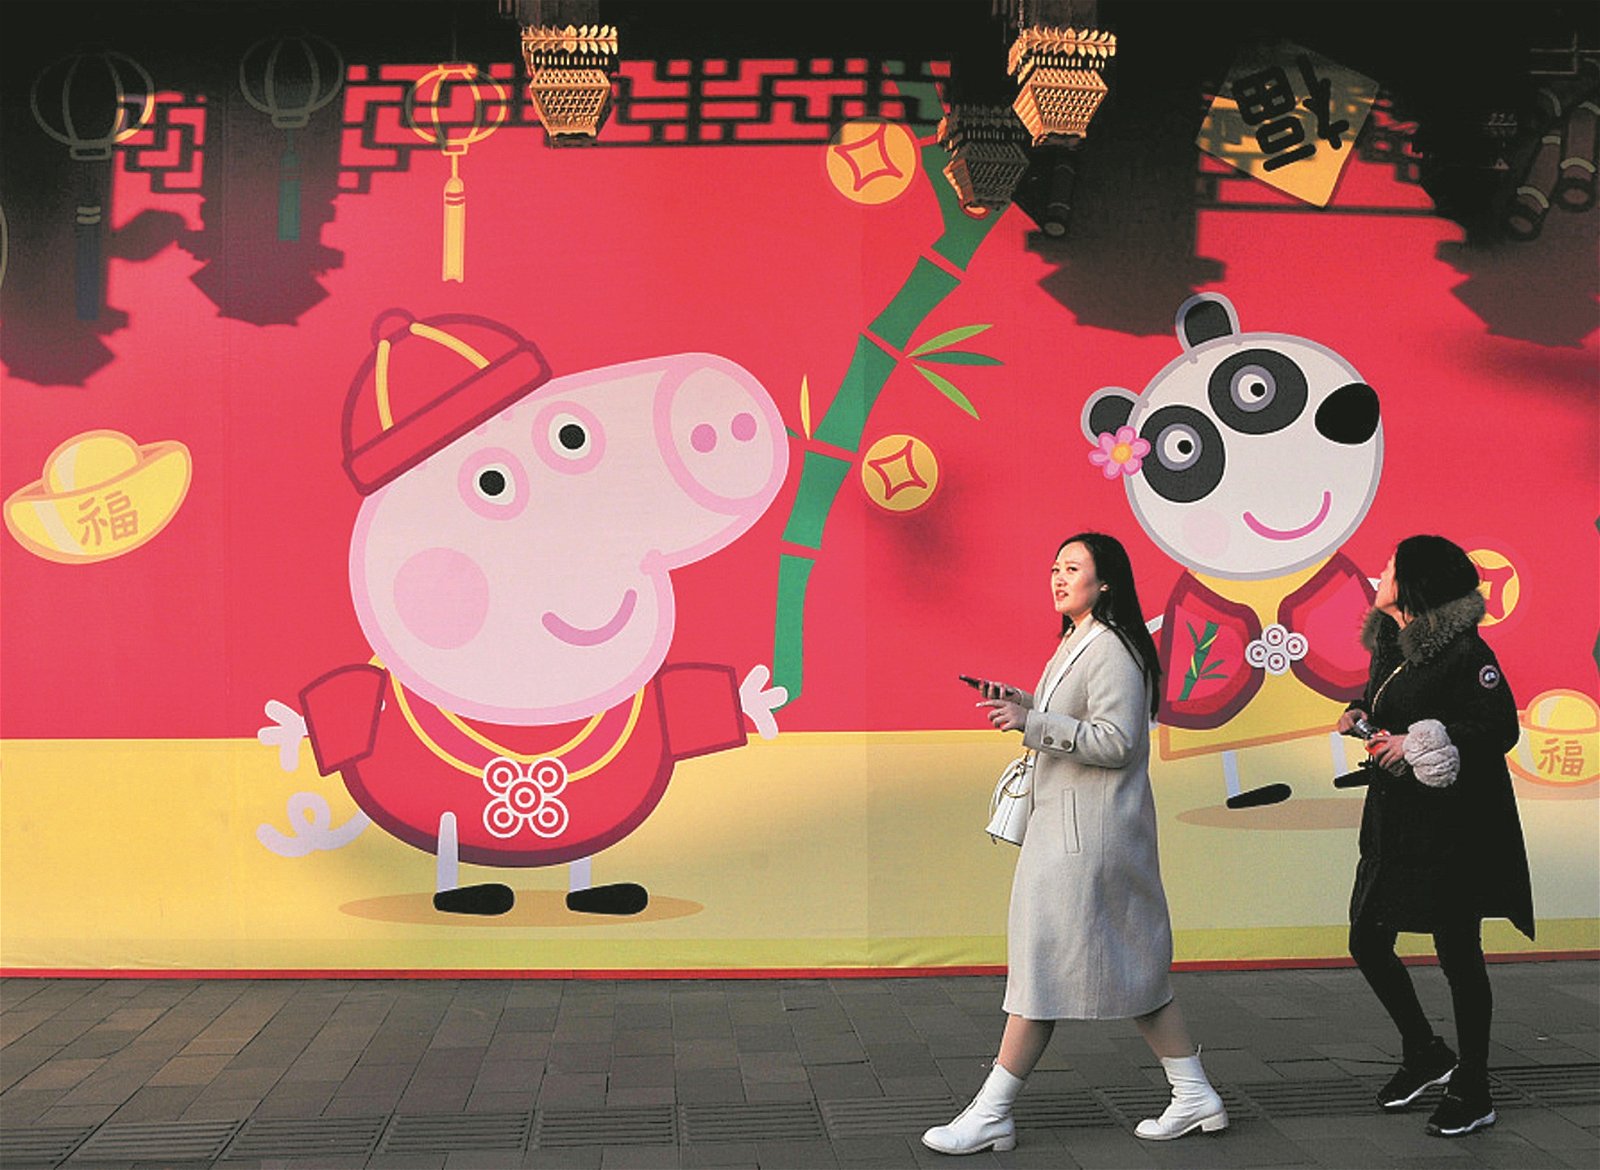 今年为农历己亥猪年，在中国随处可见“猪”元素。这是憨态可掬的“小猪佩奇”壁纸贴在上海豫园商城的四周墙面，充满了猪年即将到来的新年氛围，让人感觉新年的脚步将近。